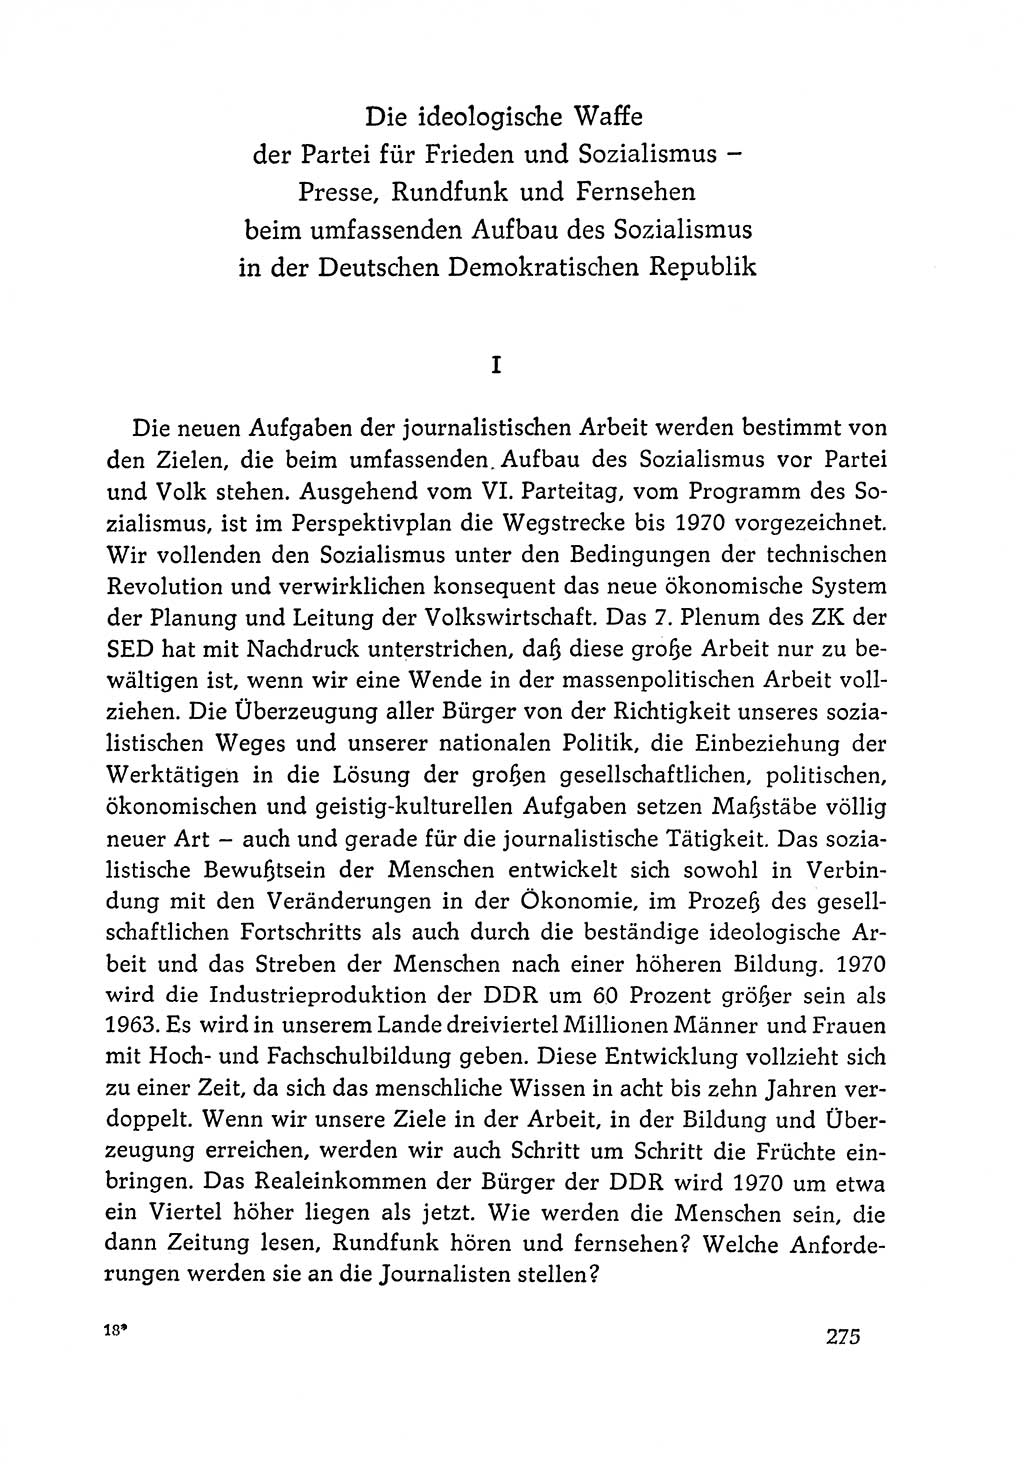 Dokumente der Sozialistischen Einheitspartei Deutschlands (SED) [Deutsche Demokratische Republik (DDR)] 1964-1965, Seite 275 (Dok. SED DDR 1964-1965, S. 275)